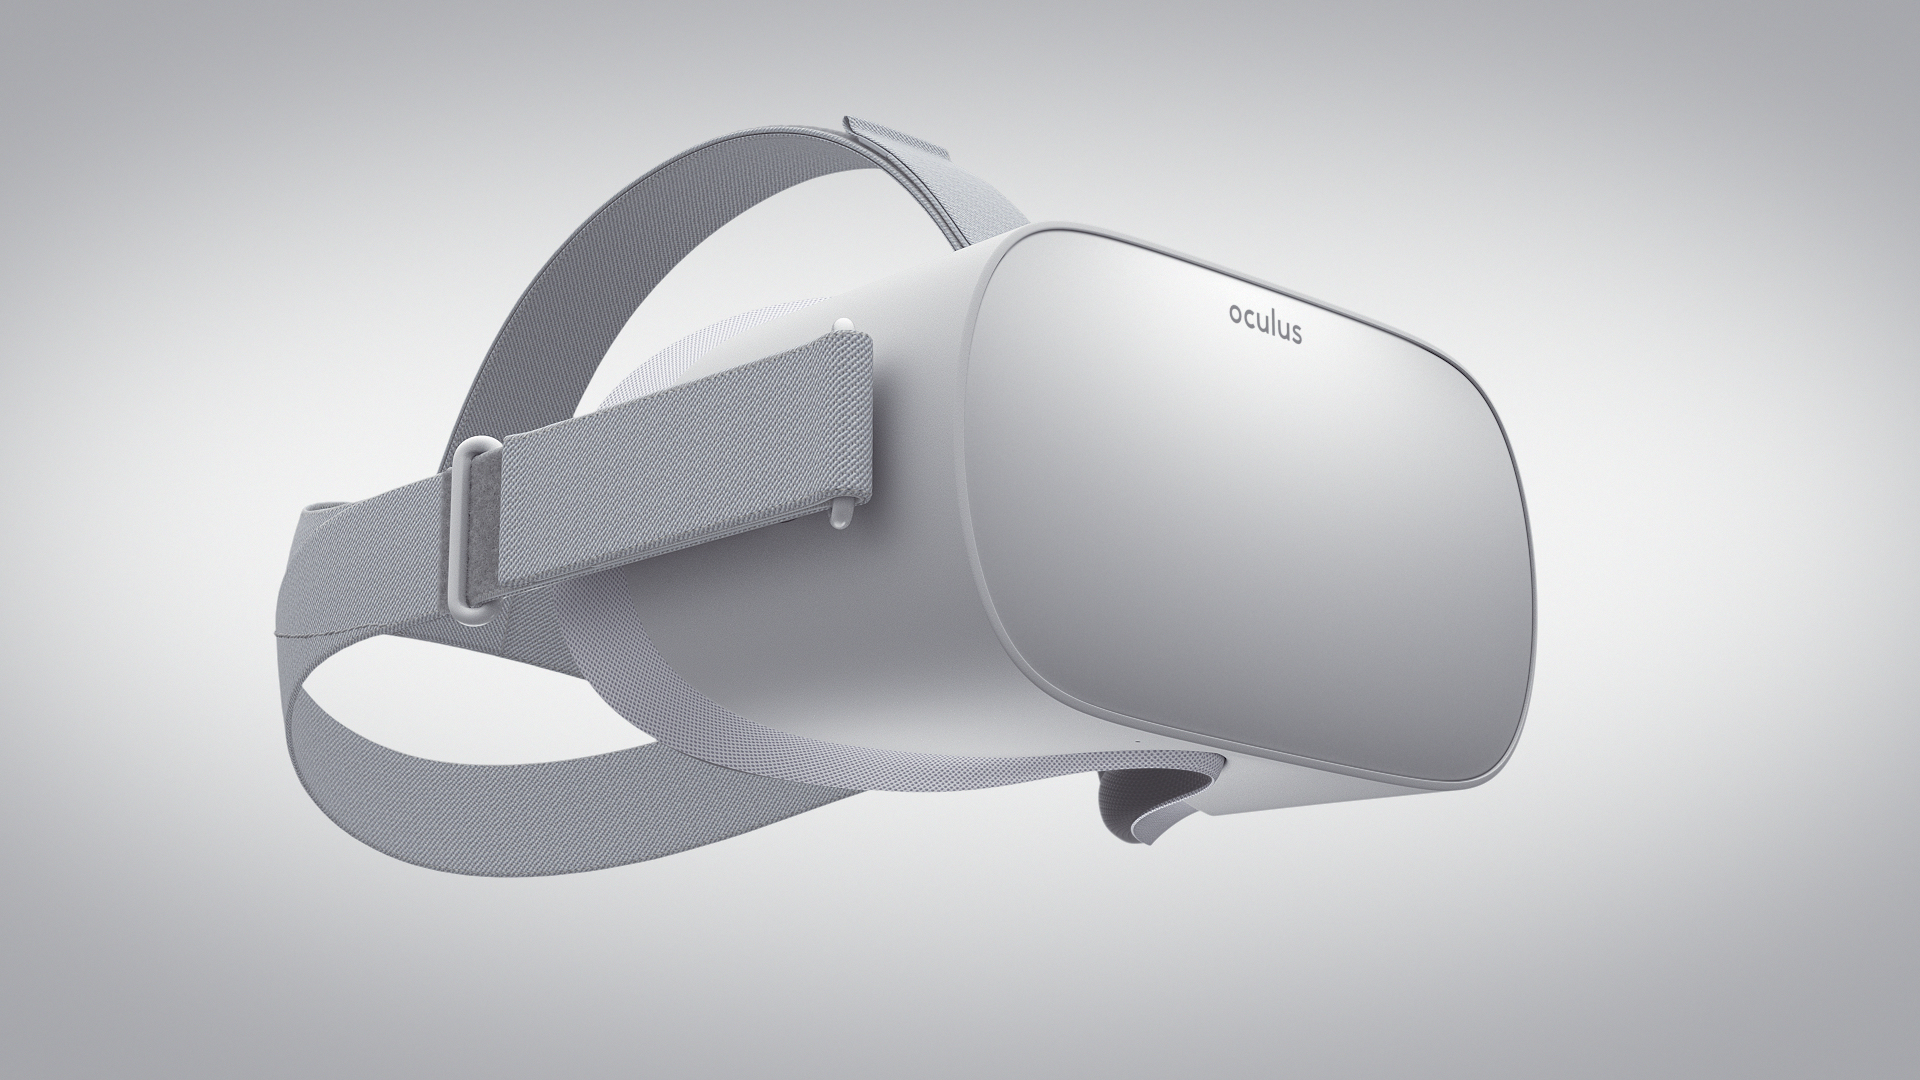 Vr очки oculus 3. ВР очки Oculus go. Шлем виртуальной реальности Oculus go - 32 GB. Очки ВР Oculus 32. VR очки mi Oculus.